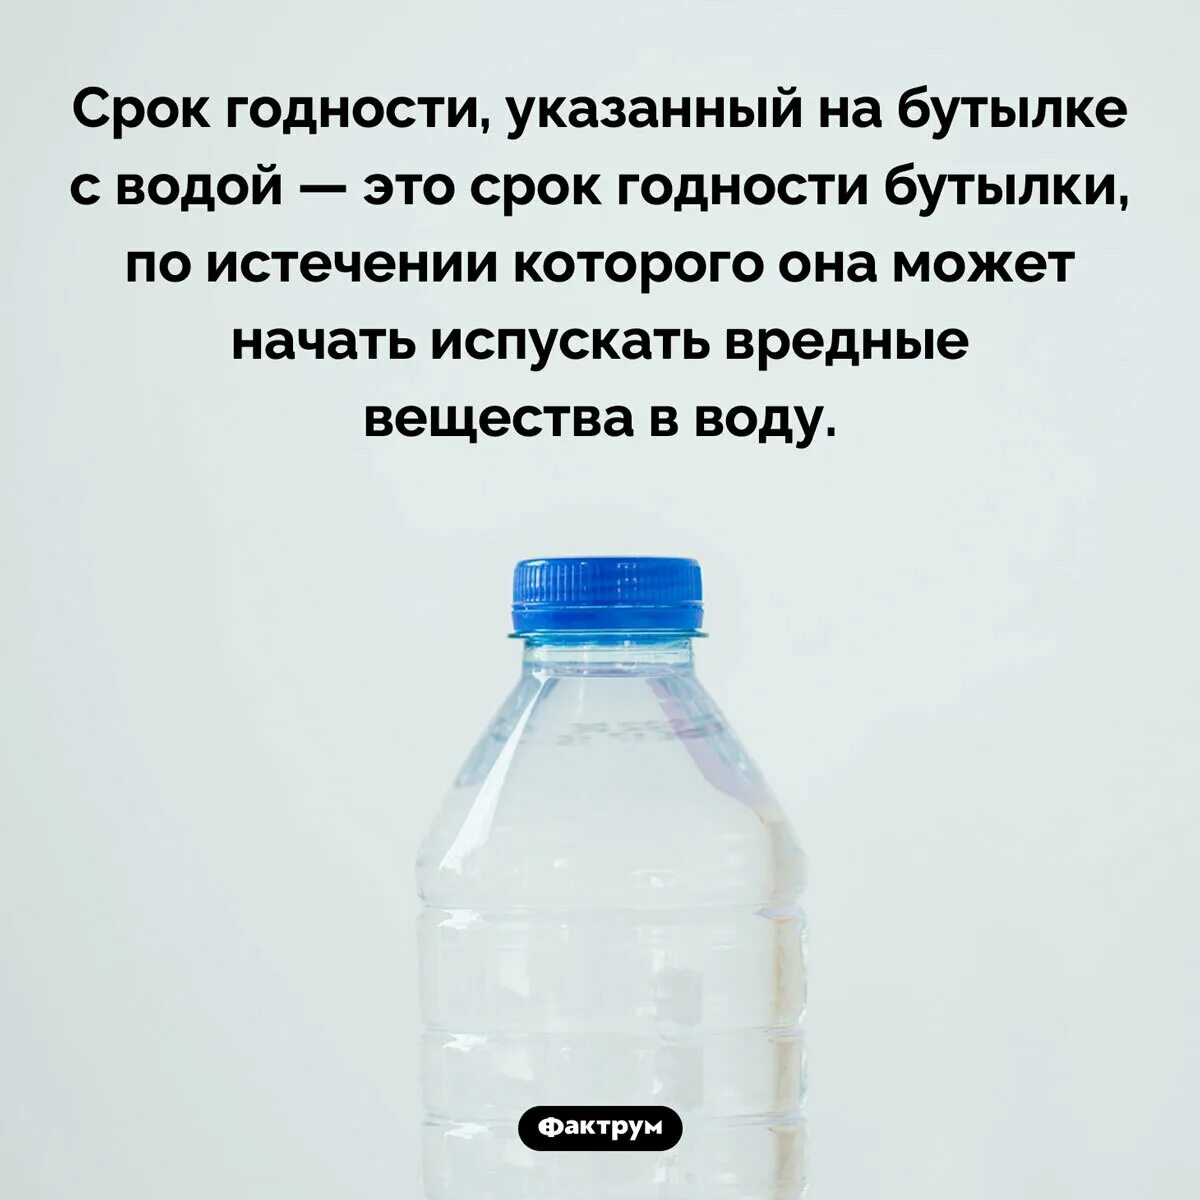 Срок годности на бутылке. Срок годности воды. Вода питьевая срок годности. Срок годности жидкости. У воды есть срок годности